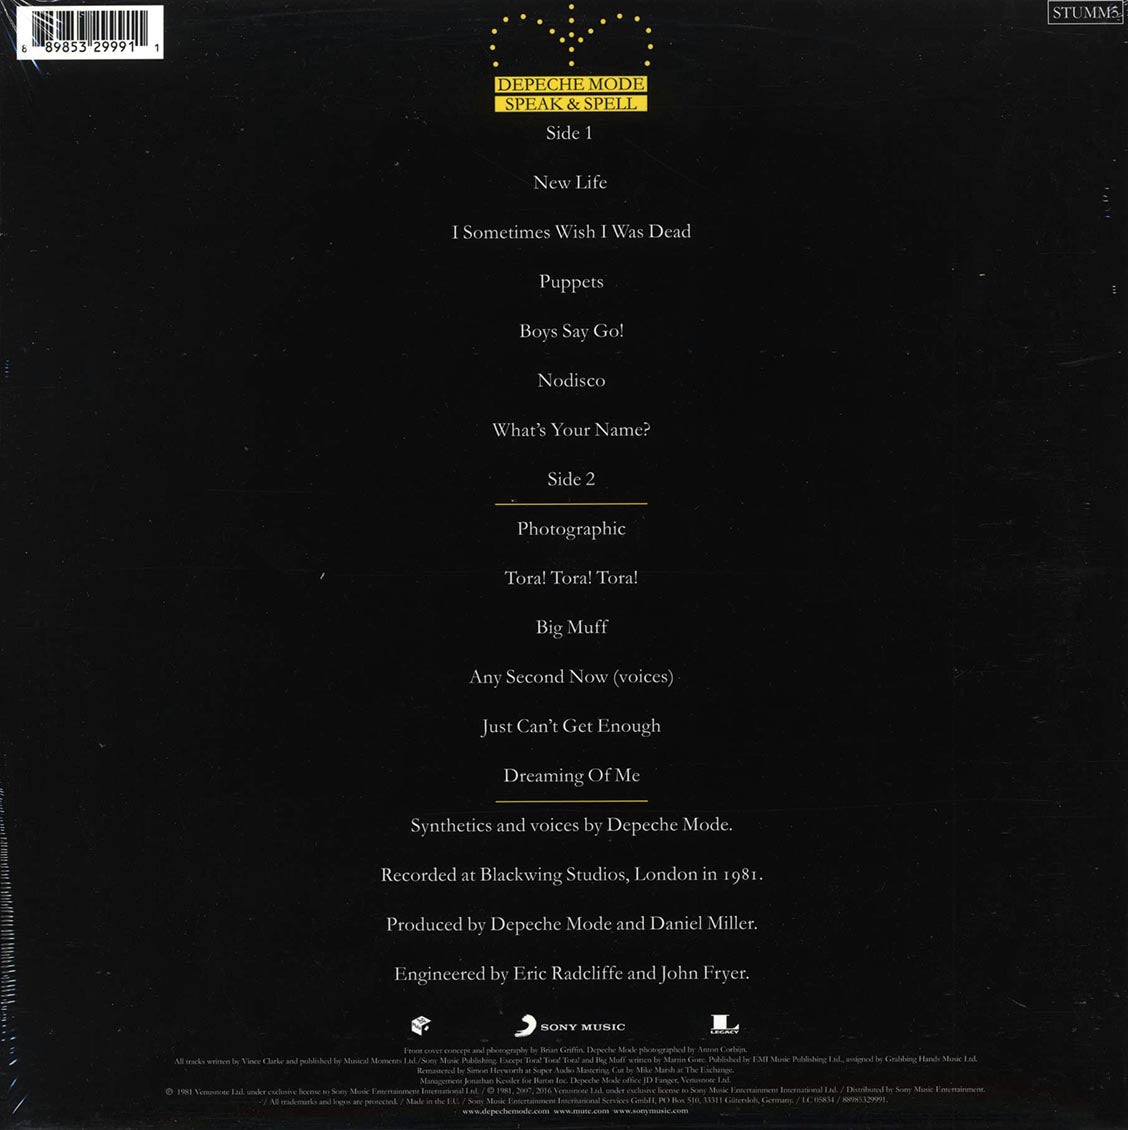 Depeche Mode - Speak & Spell (180g) (remastered) - Vinyl LP, LP